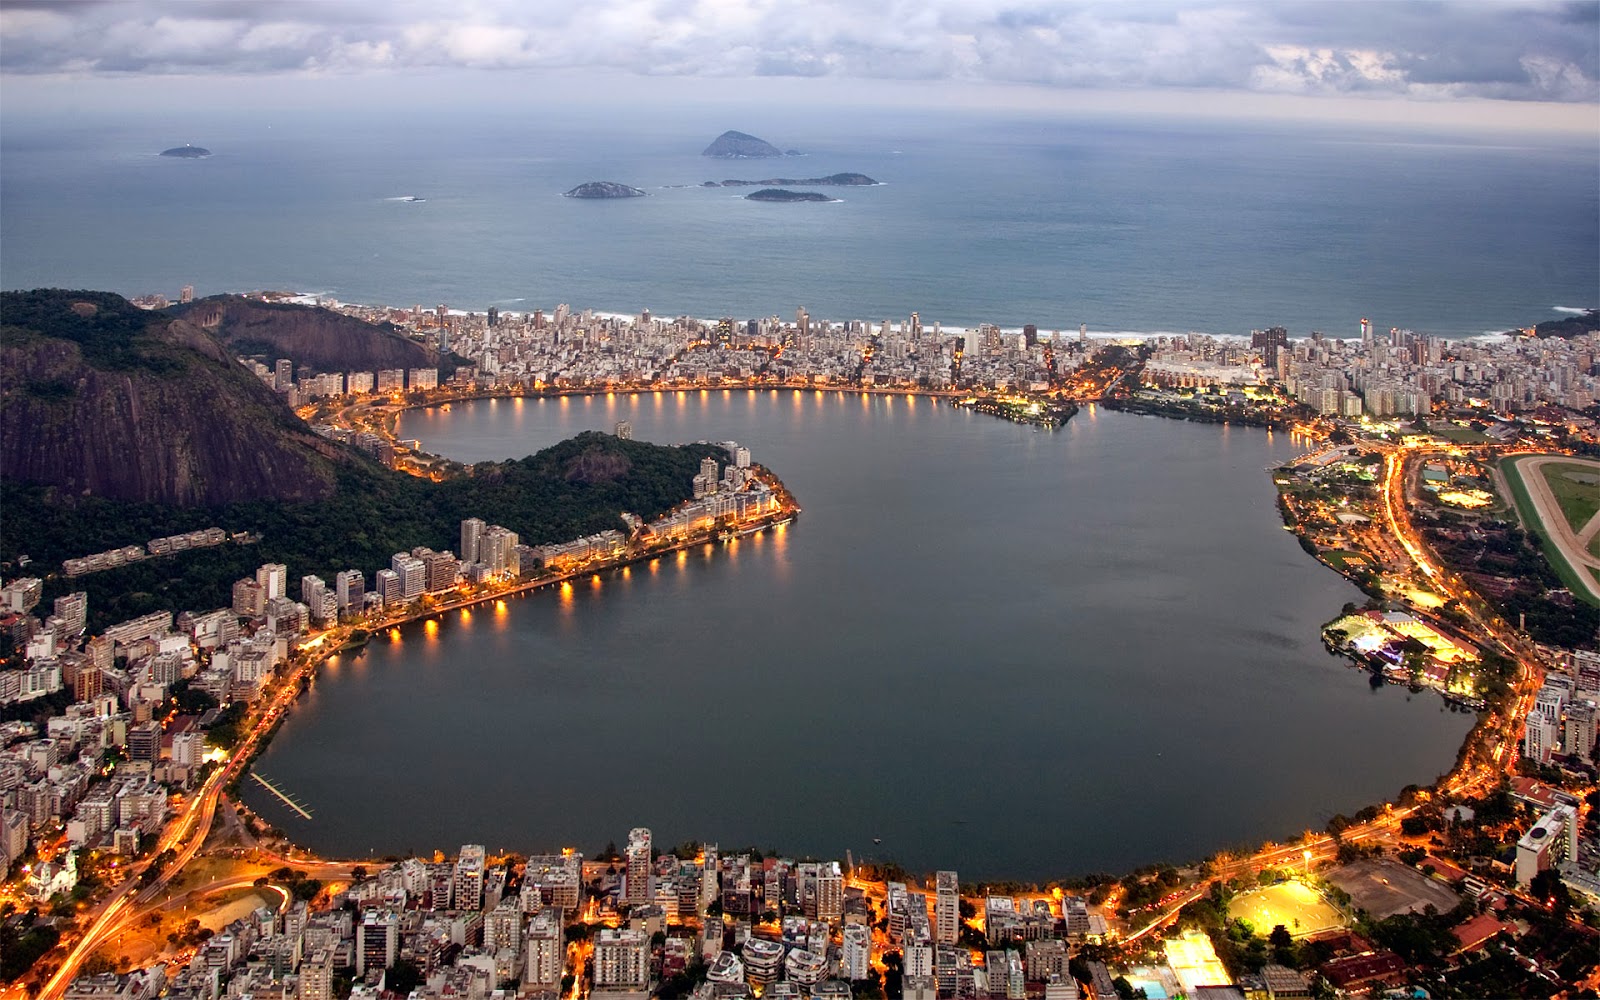 Rio de Janeiro Brazil - Places YOU want to visit